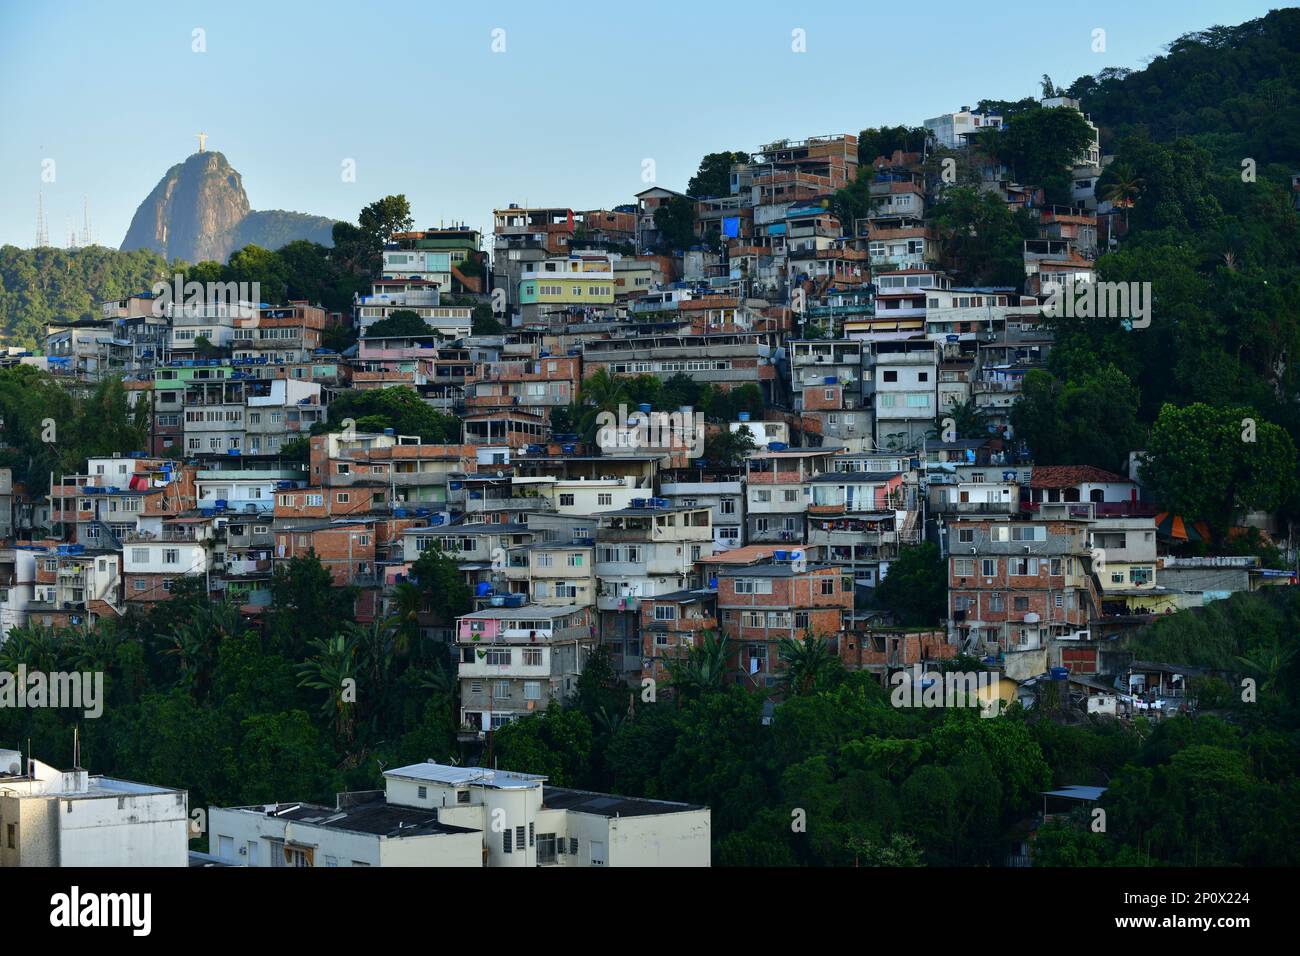 Favela de Tabaraja avec la montagne du Corcovado et la statue du Christ Rédempteur en arrière-plan, Rio de Janeiro, Brésil Banque D'Images